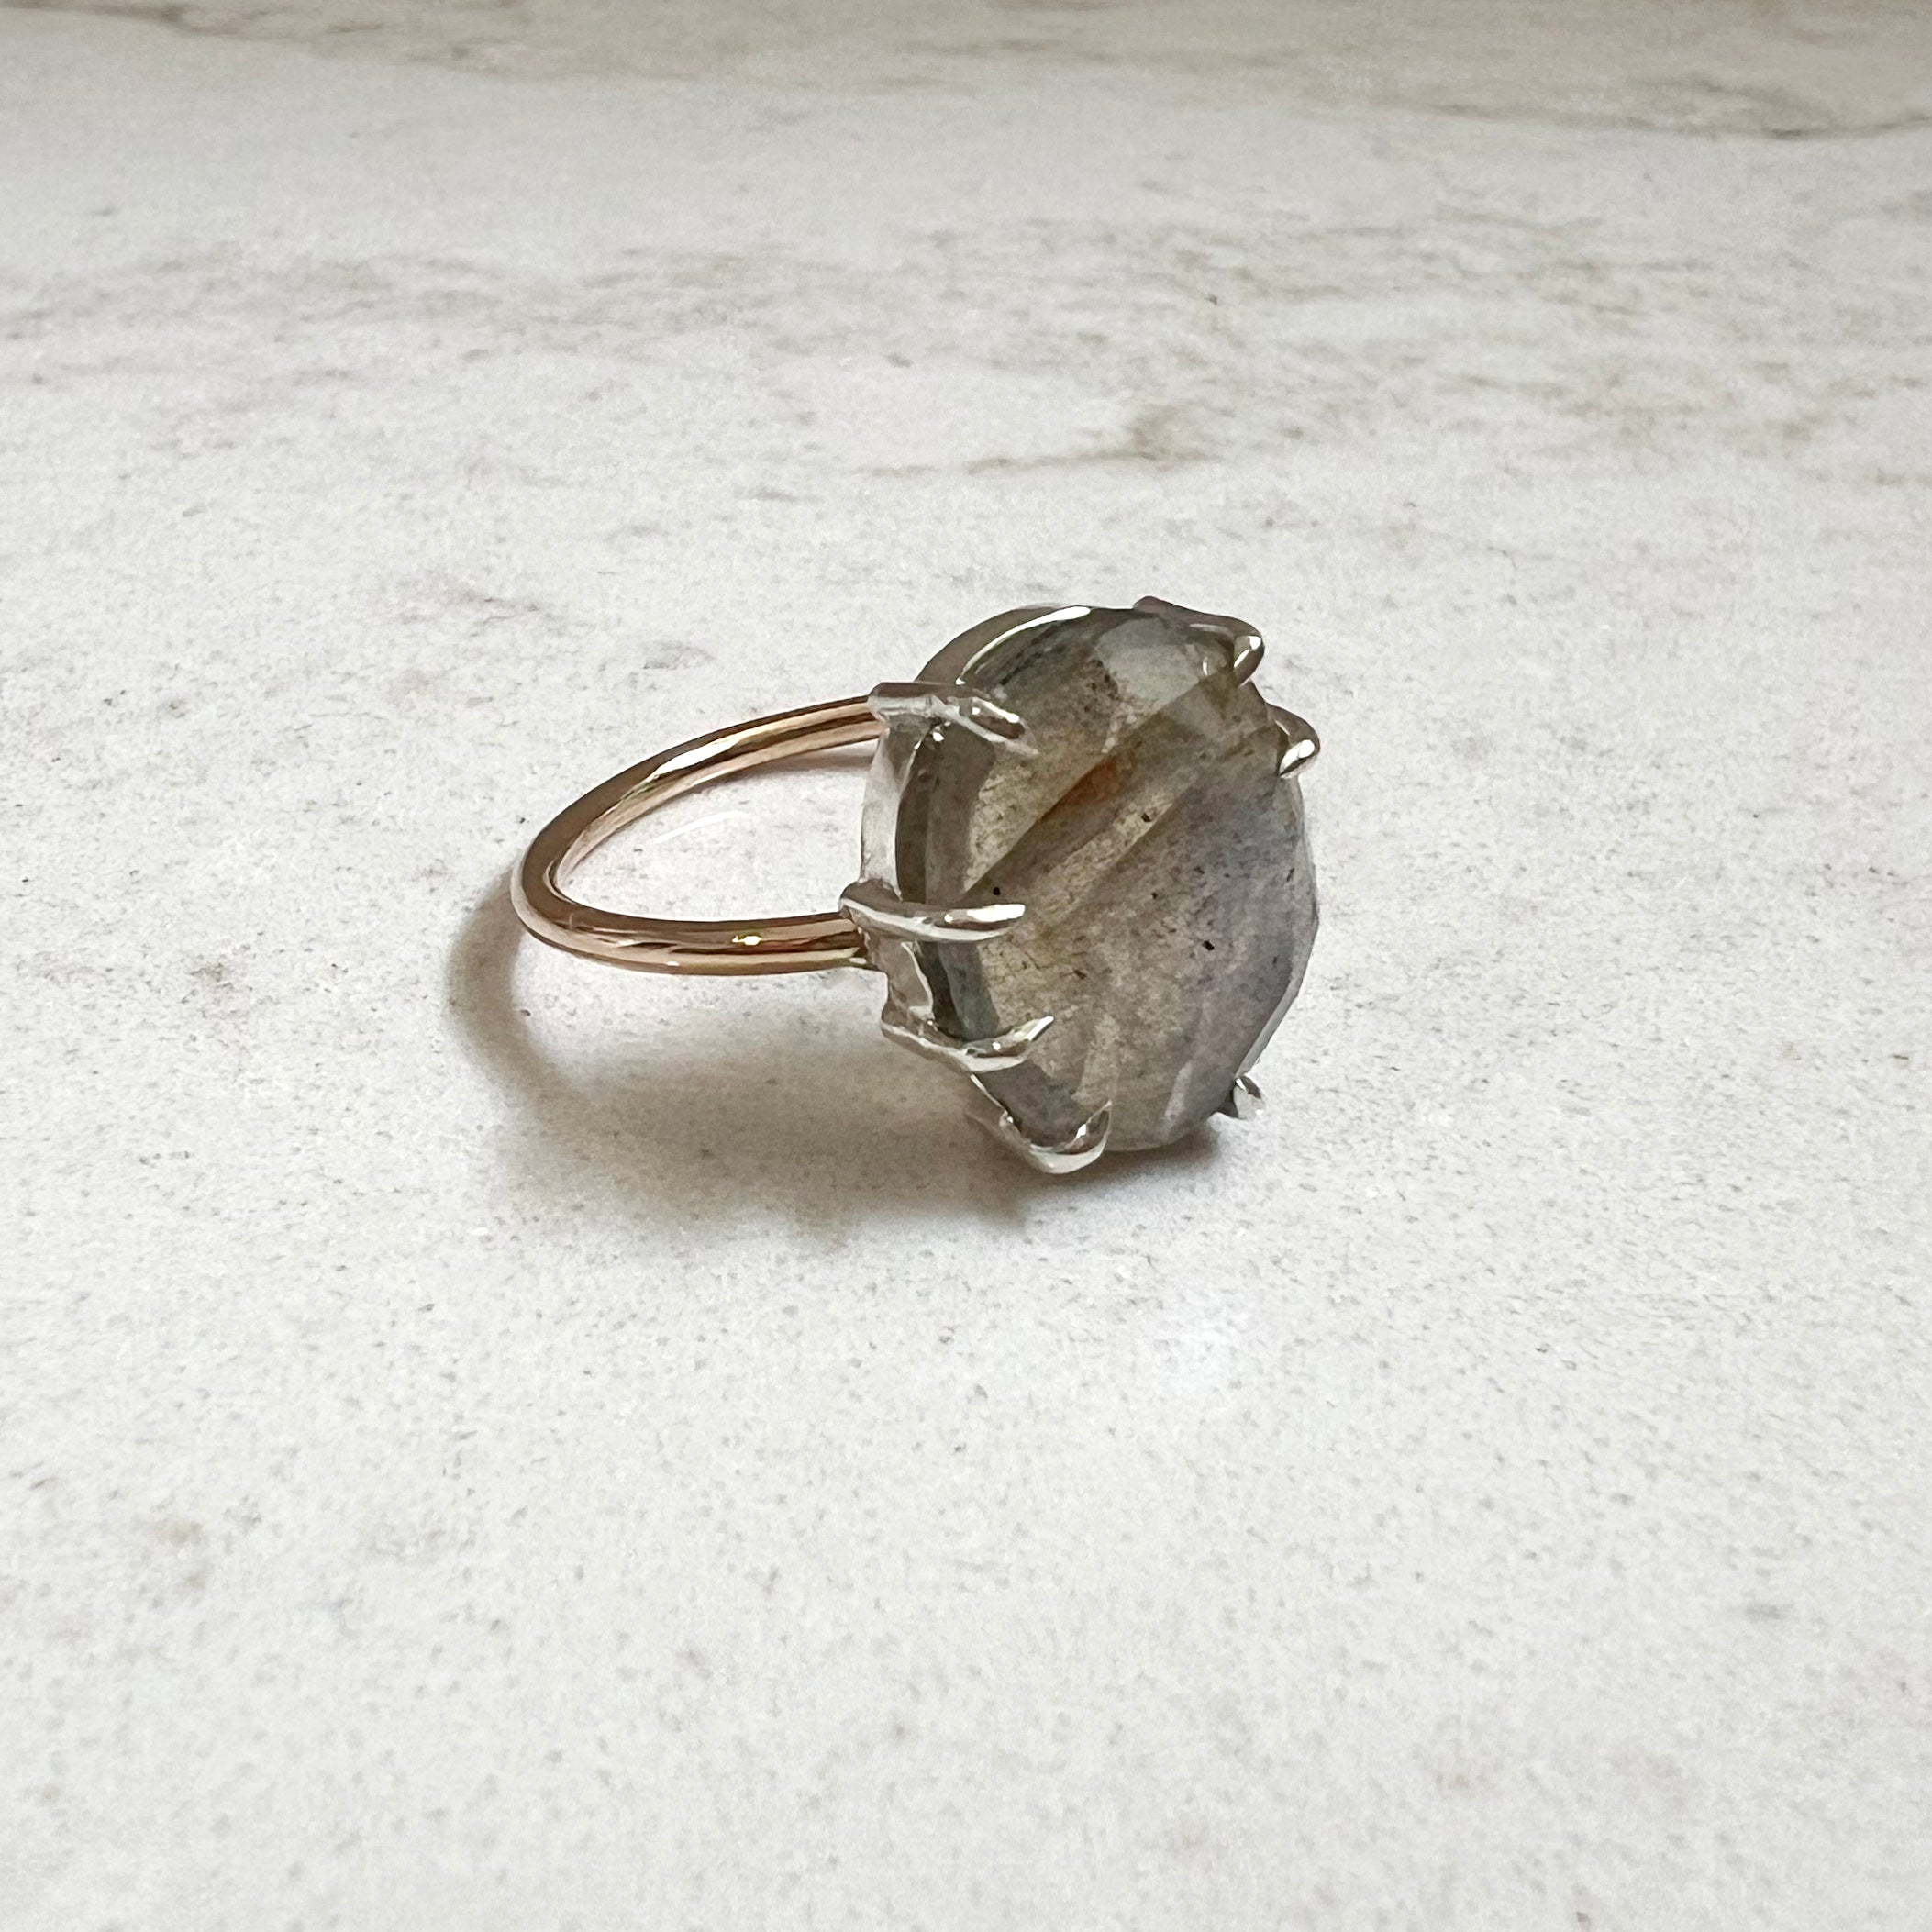 Labradorite Ring // size 6